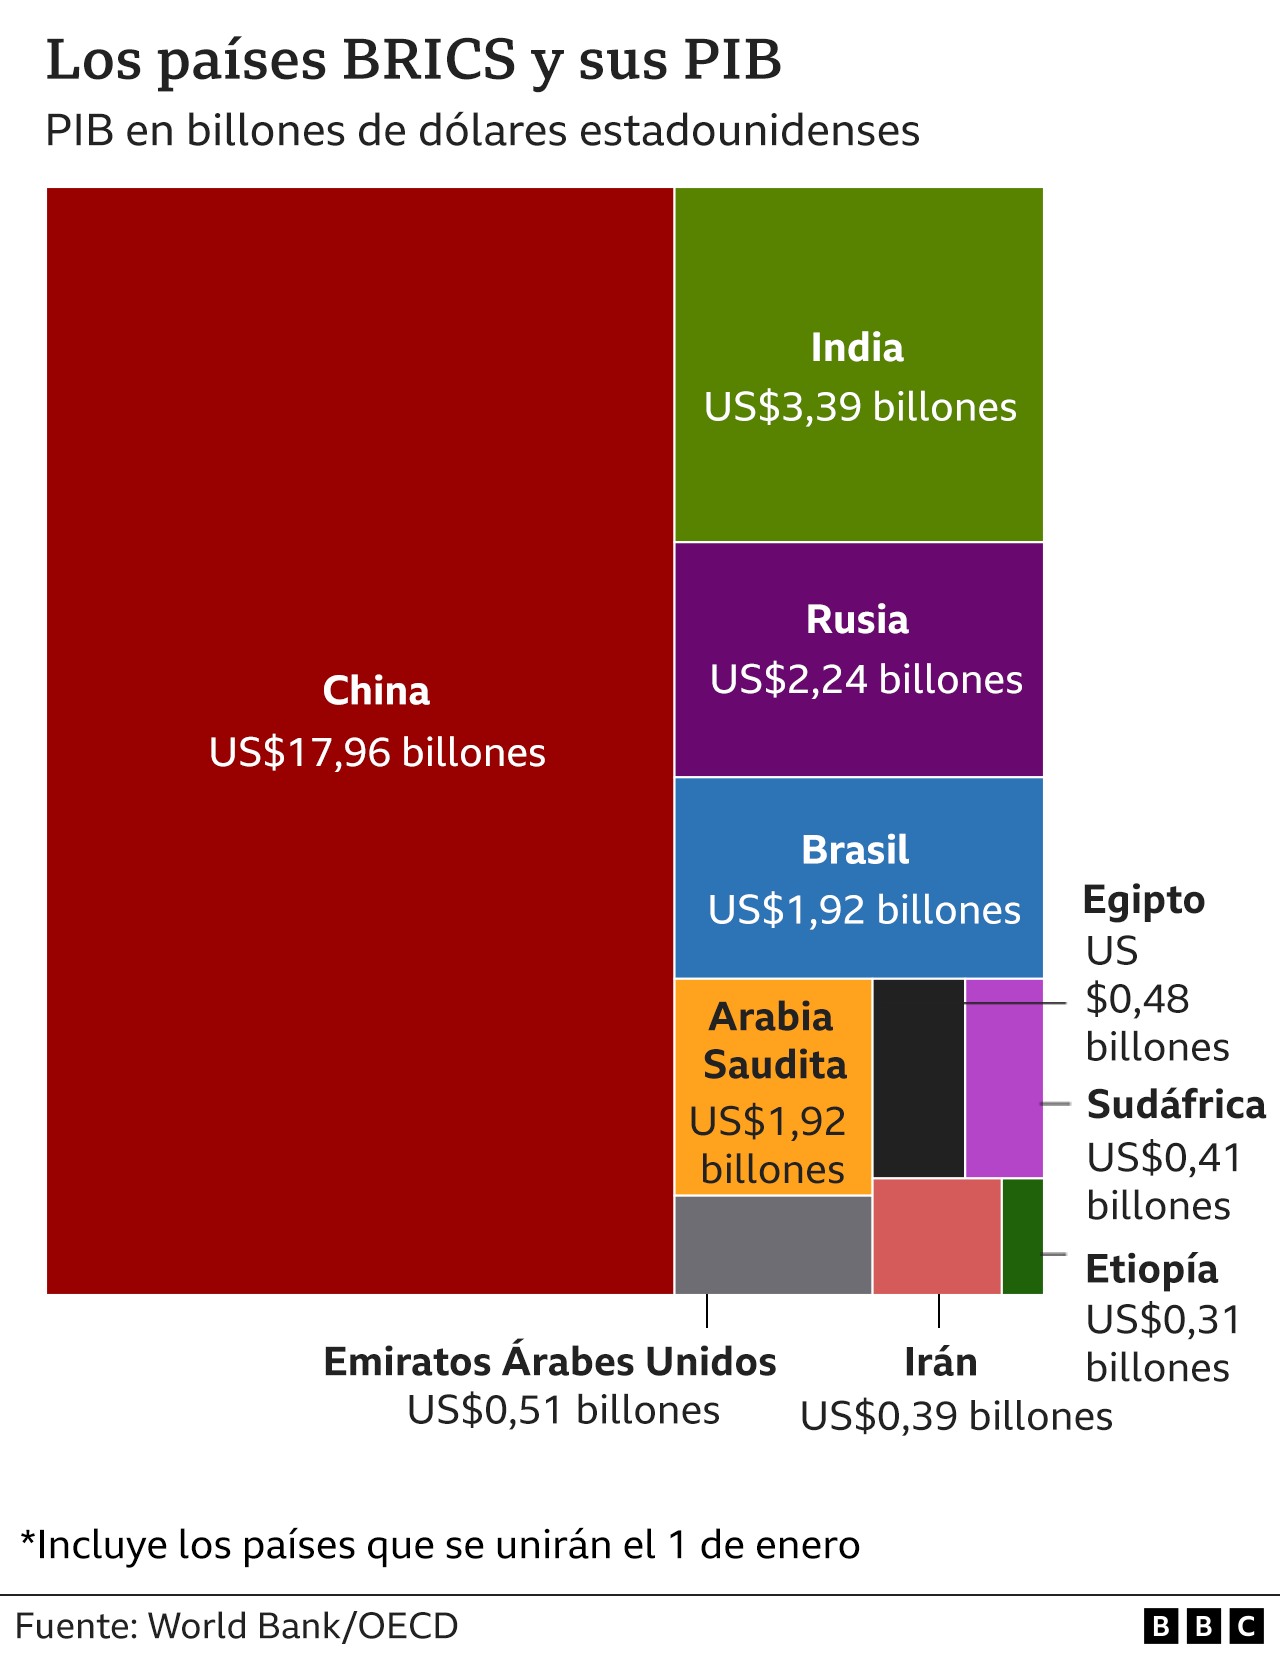 El PIB de los países del BRICS